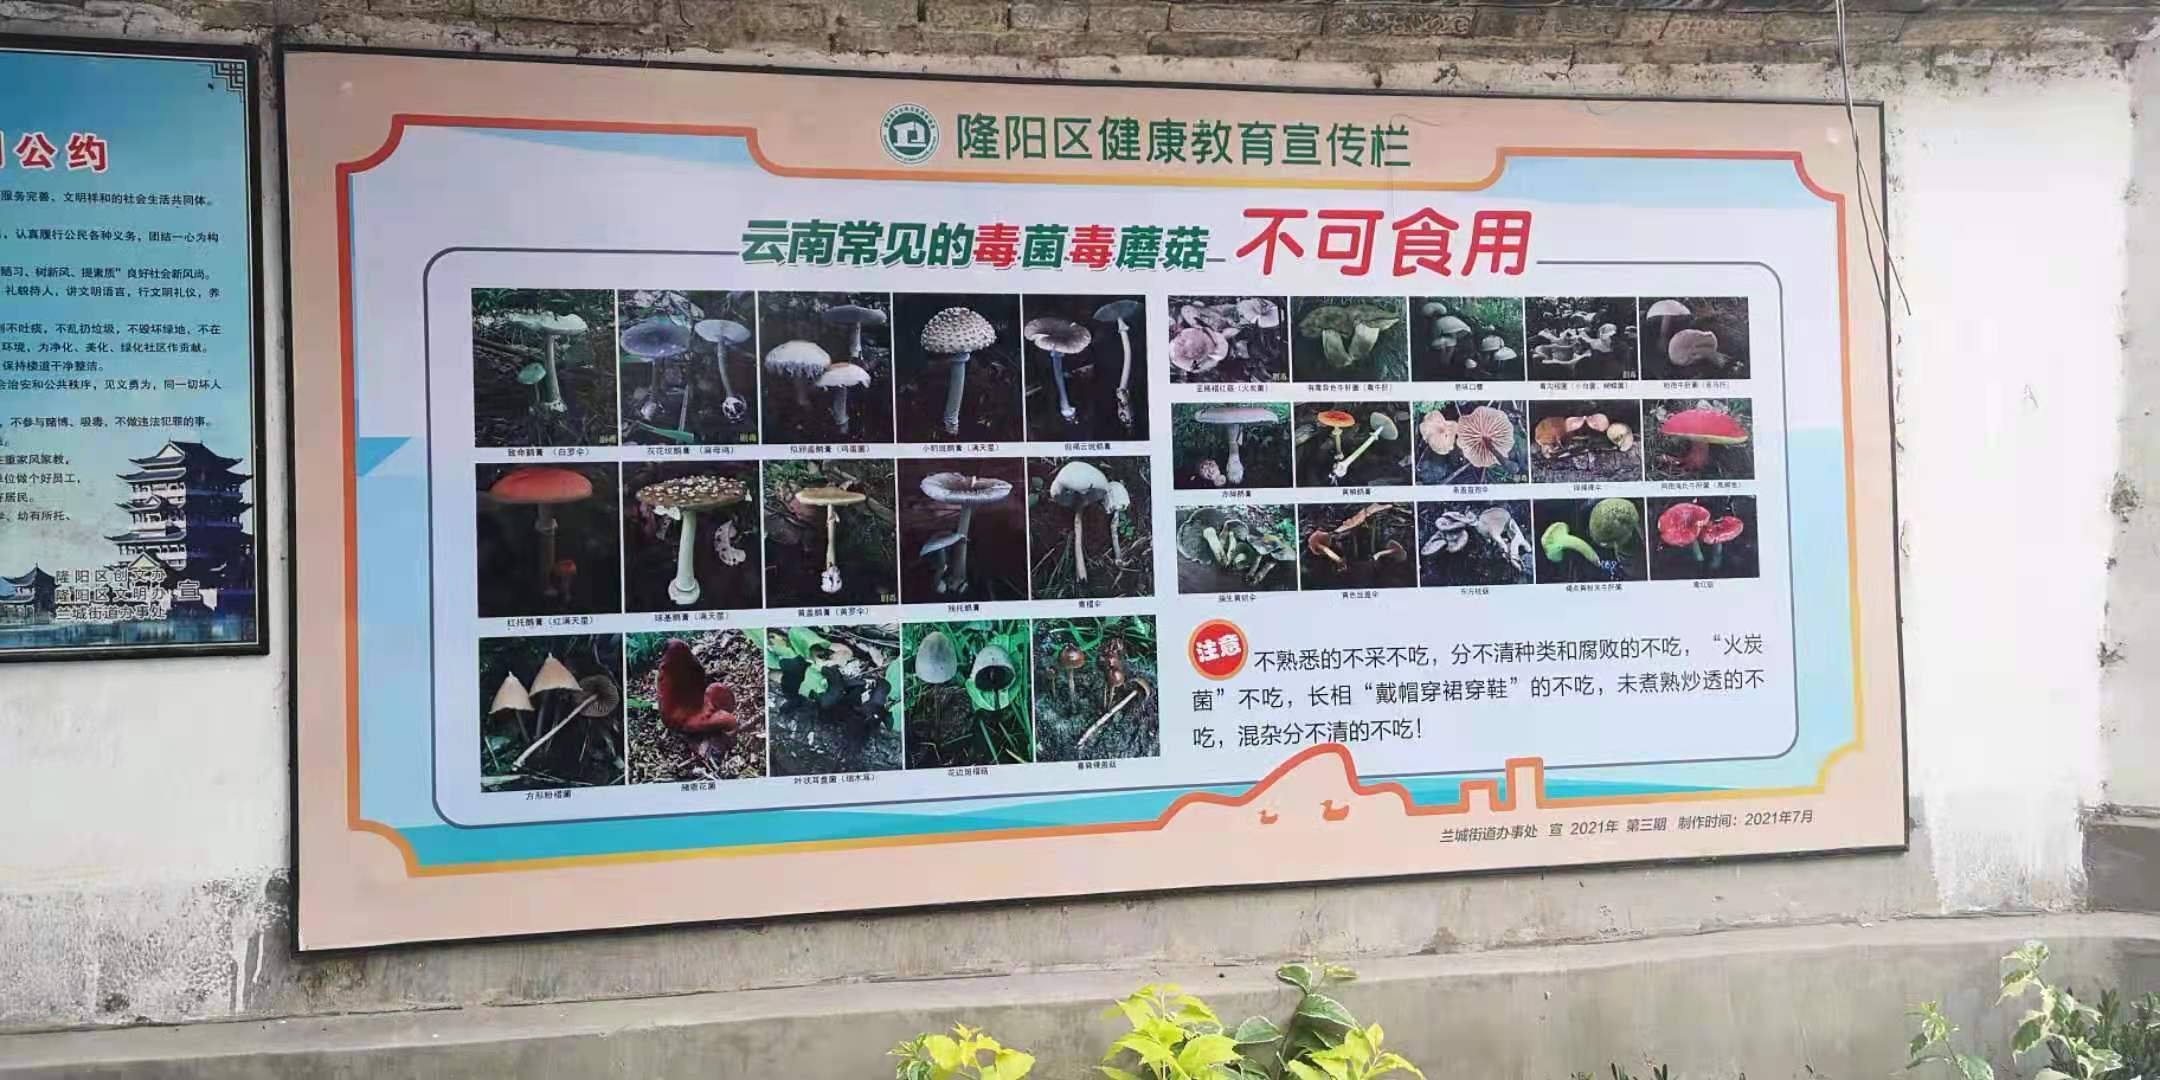 隆阳区兰城街道多种形式开展野生菌中毒防控宣传 守护群众"舌尖上"的